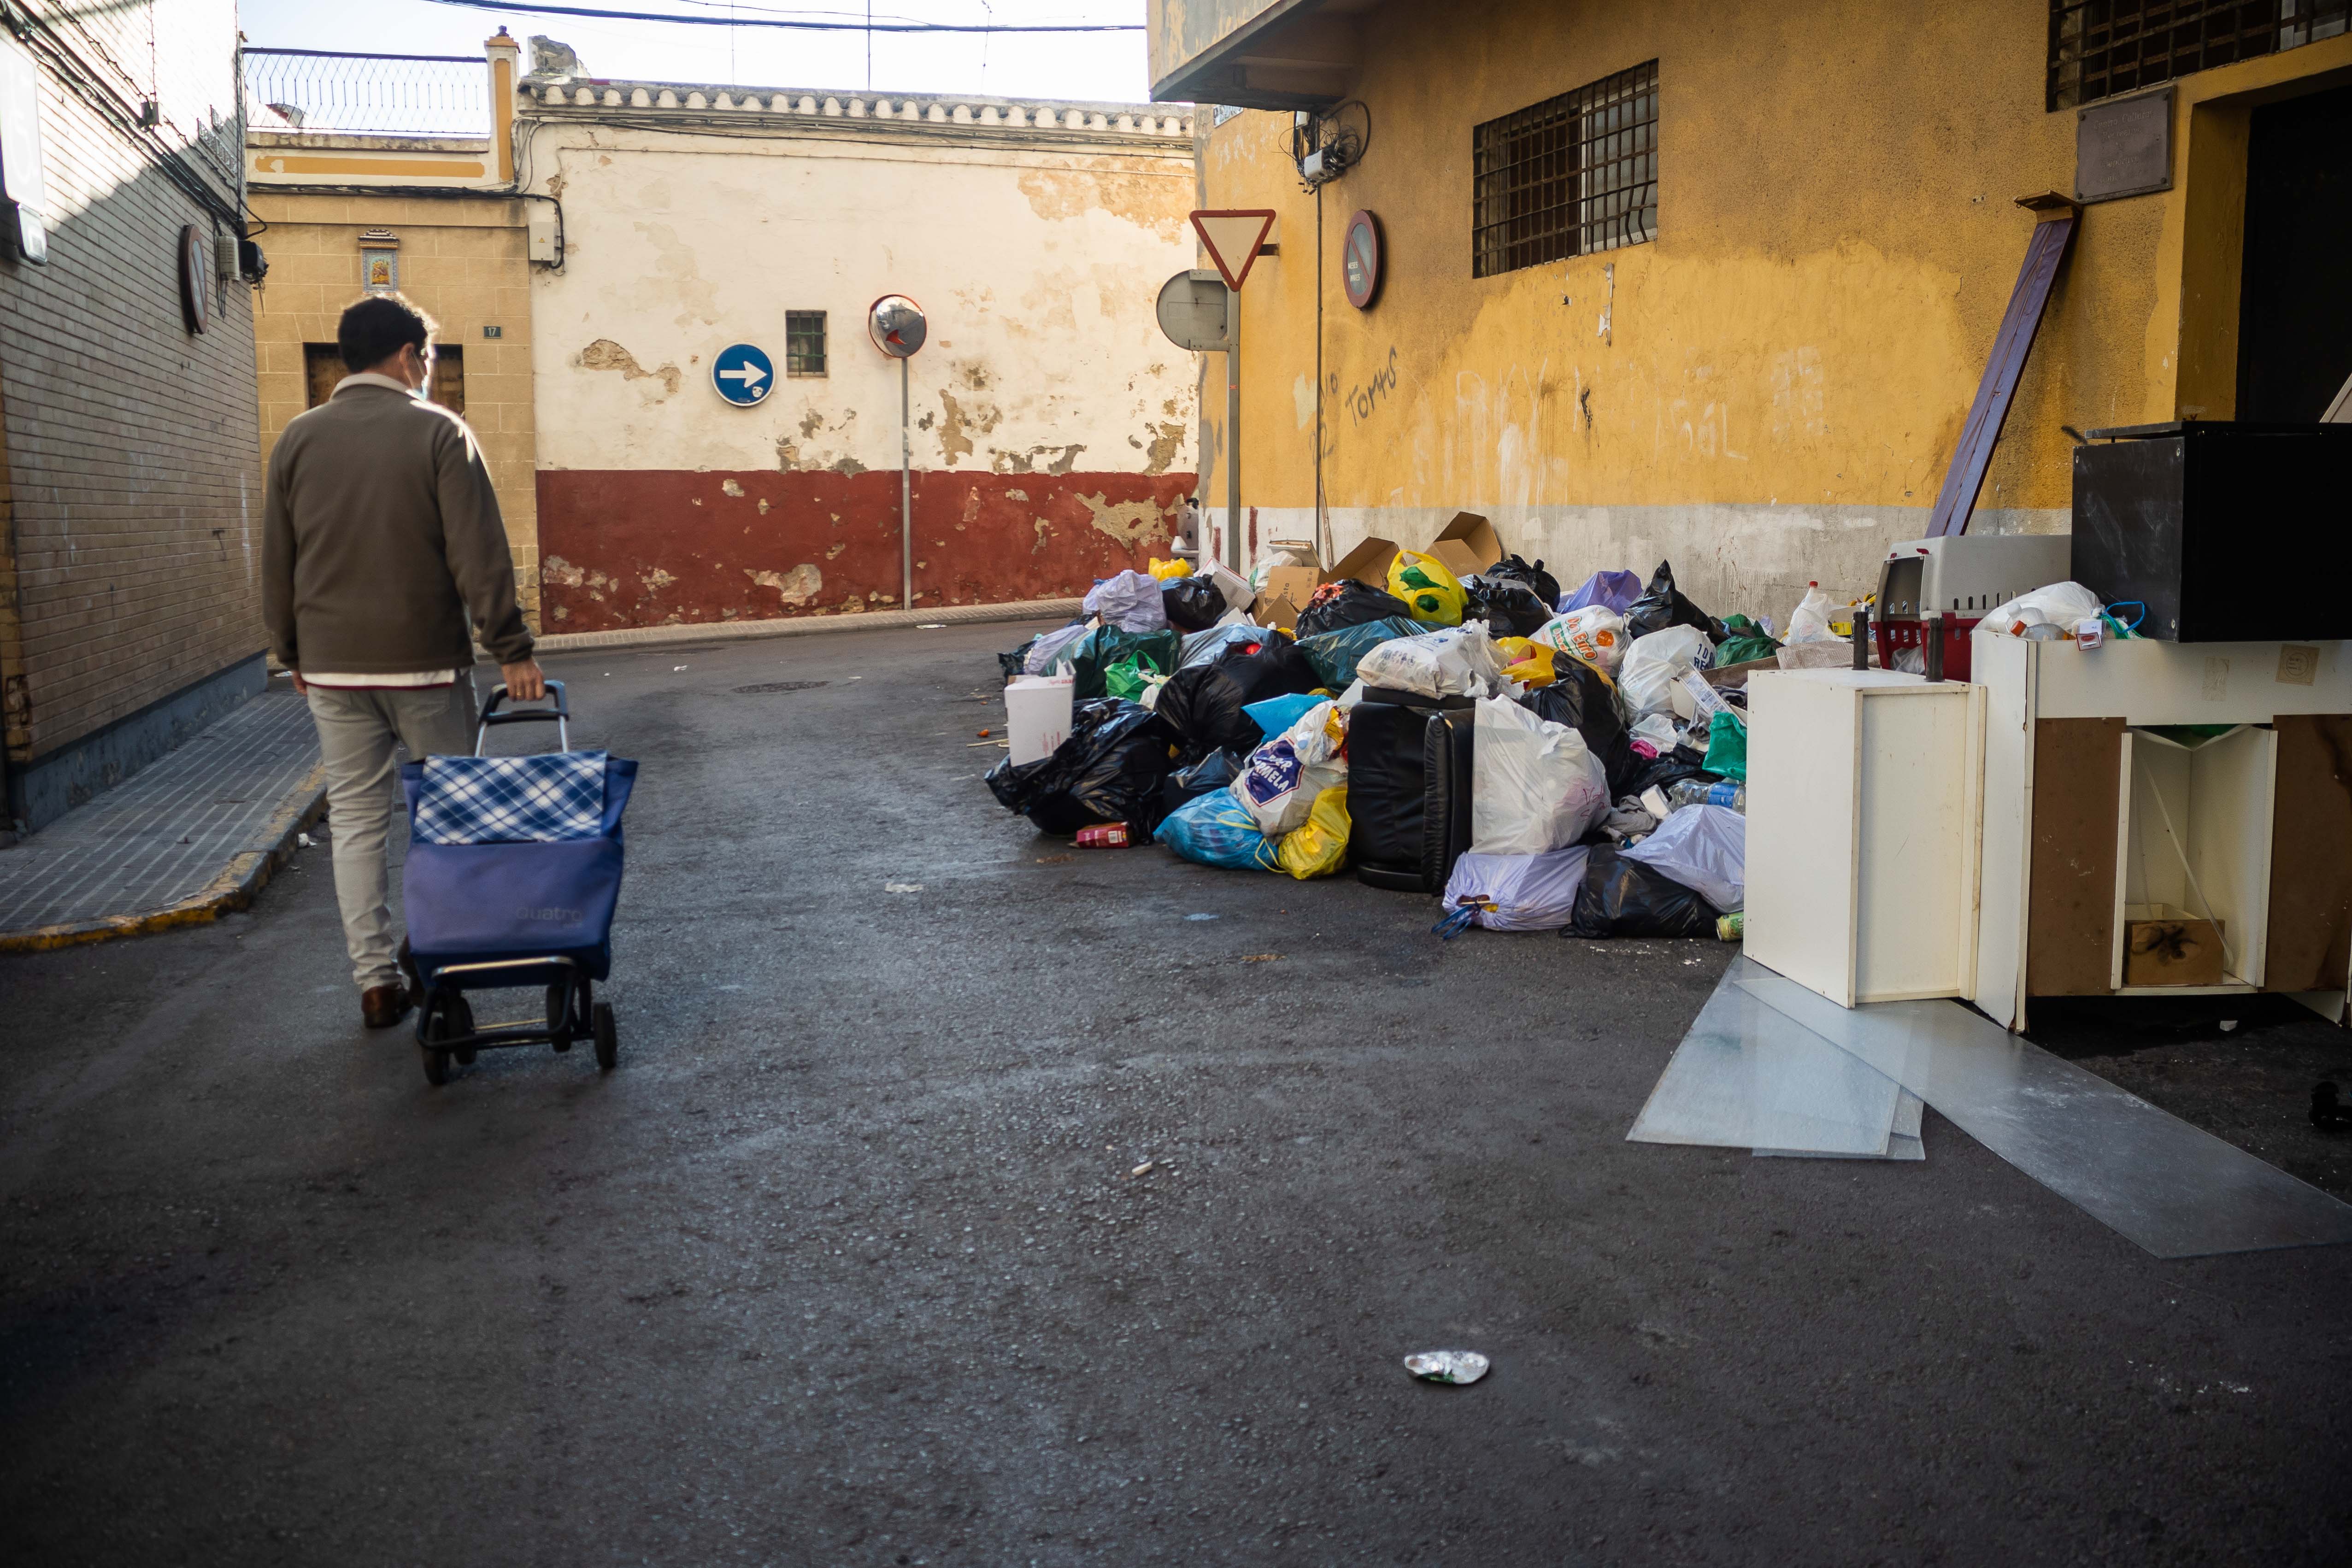 Imagen de El Puerto de Santa María y la acumulación de basura durante una huelga.